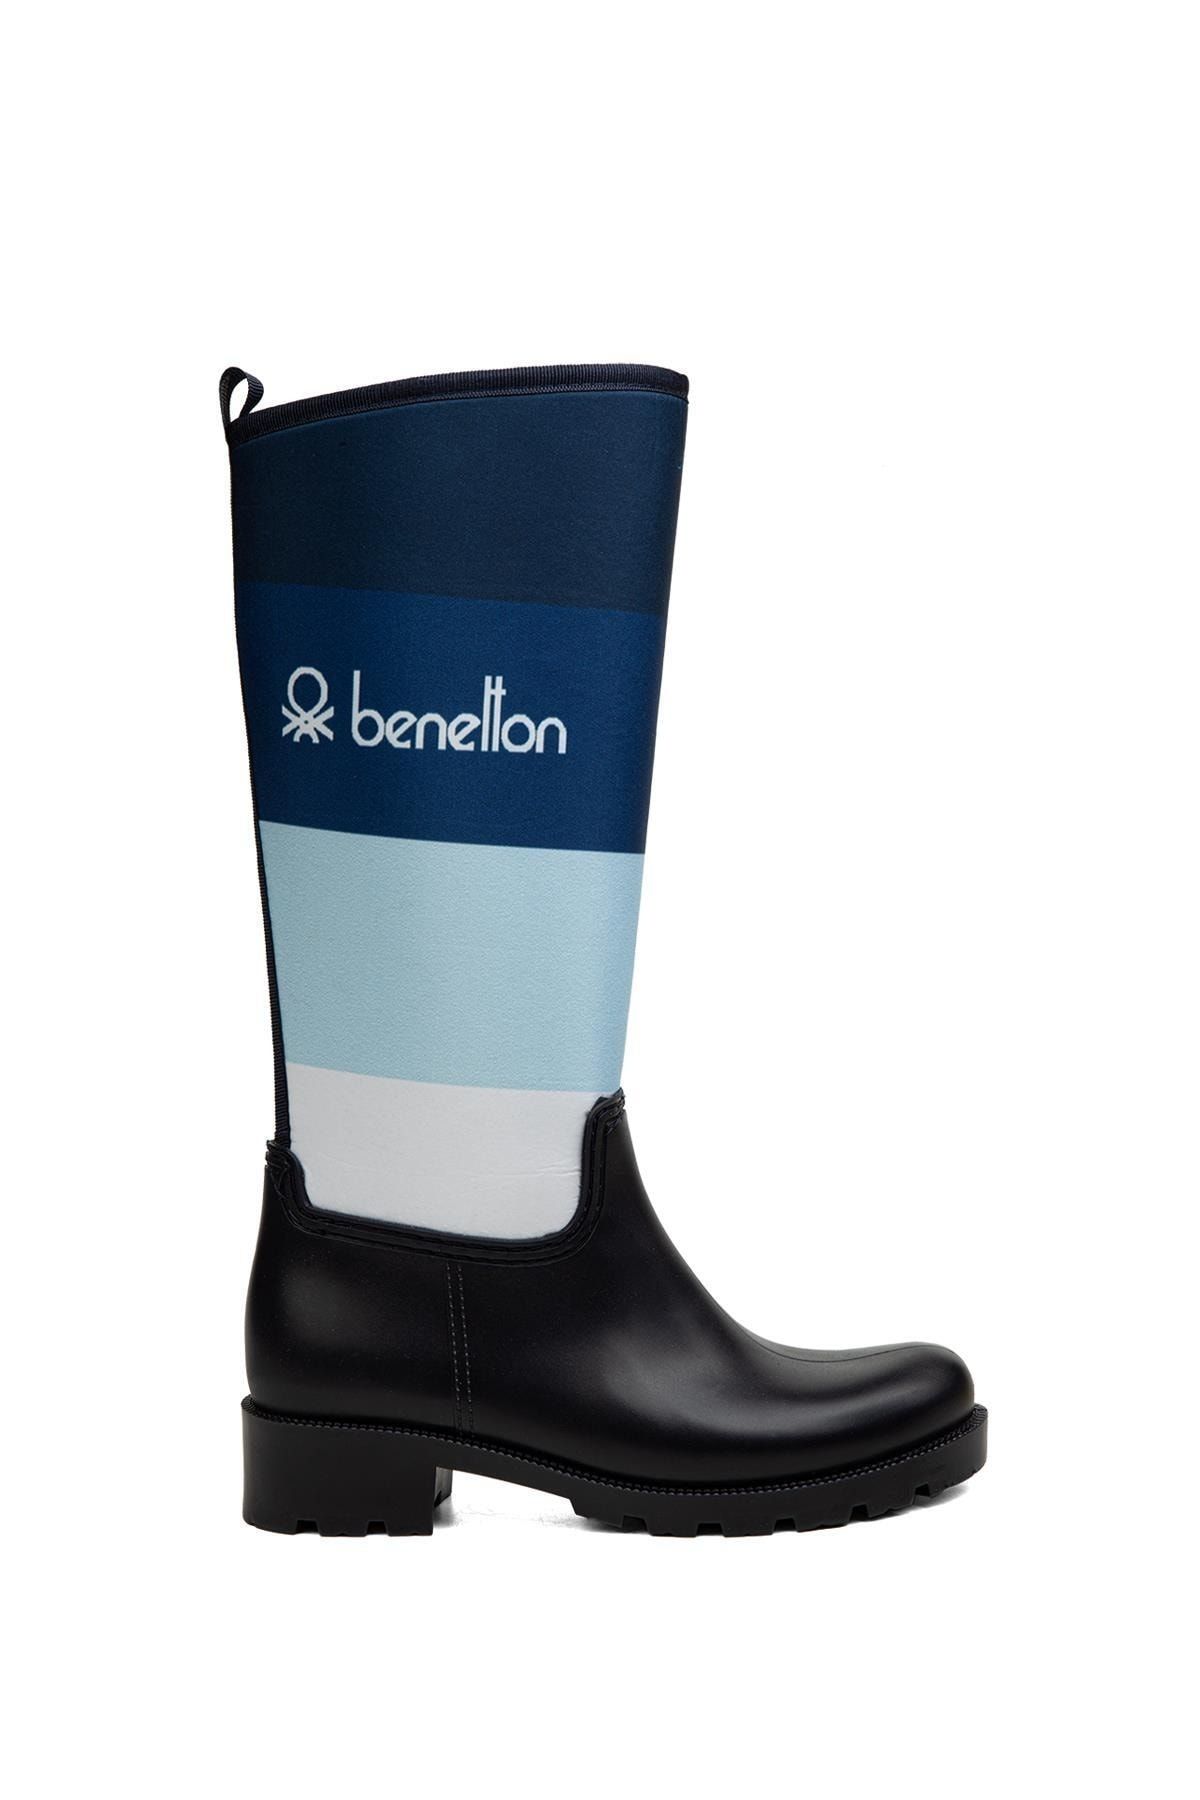 Benetton ® | Bn-50010 - 34124 Lacivert - Kadın Çizme